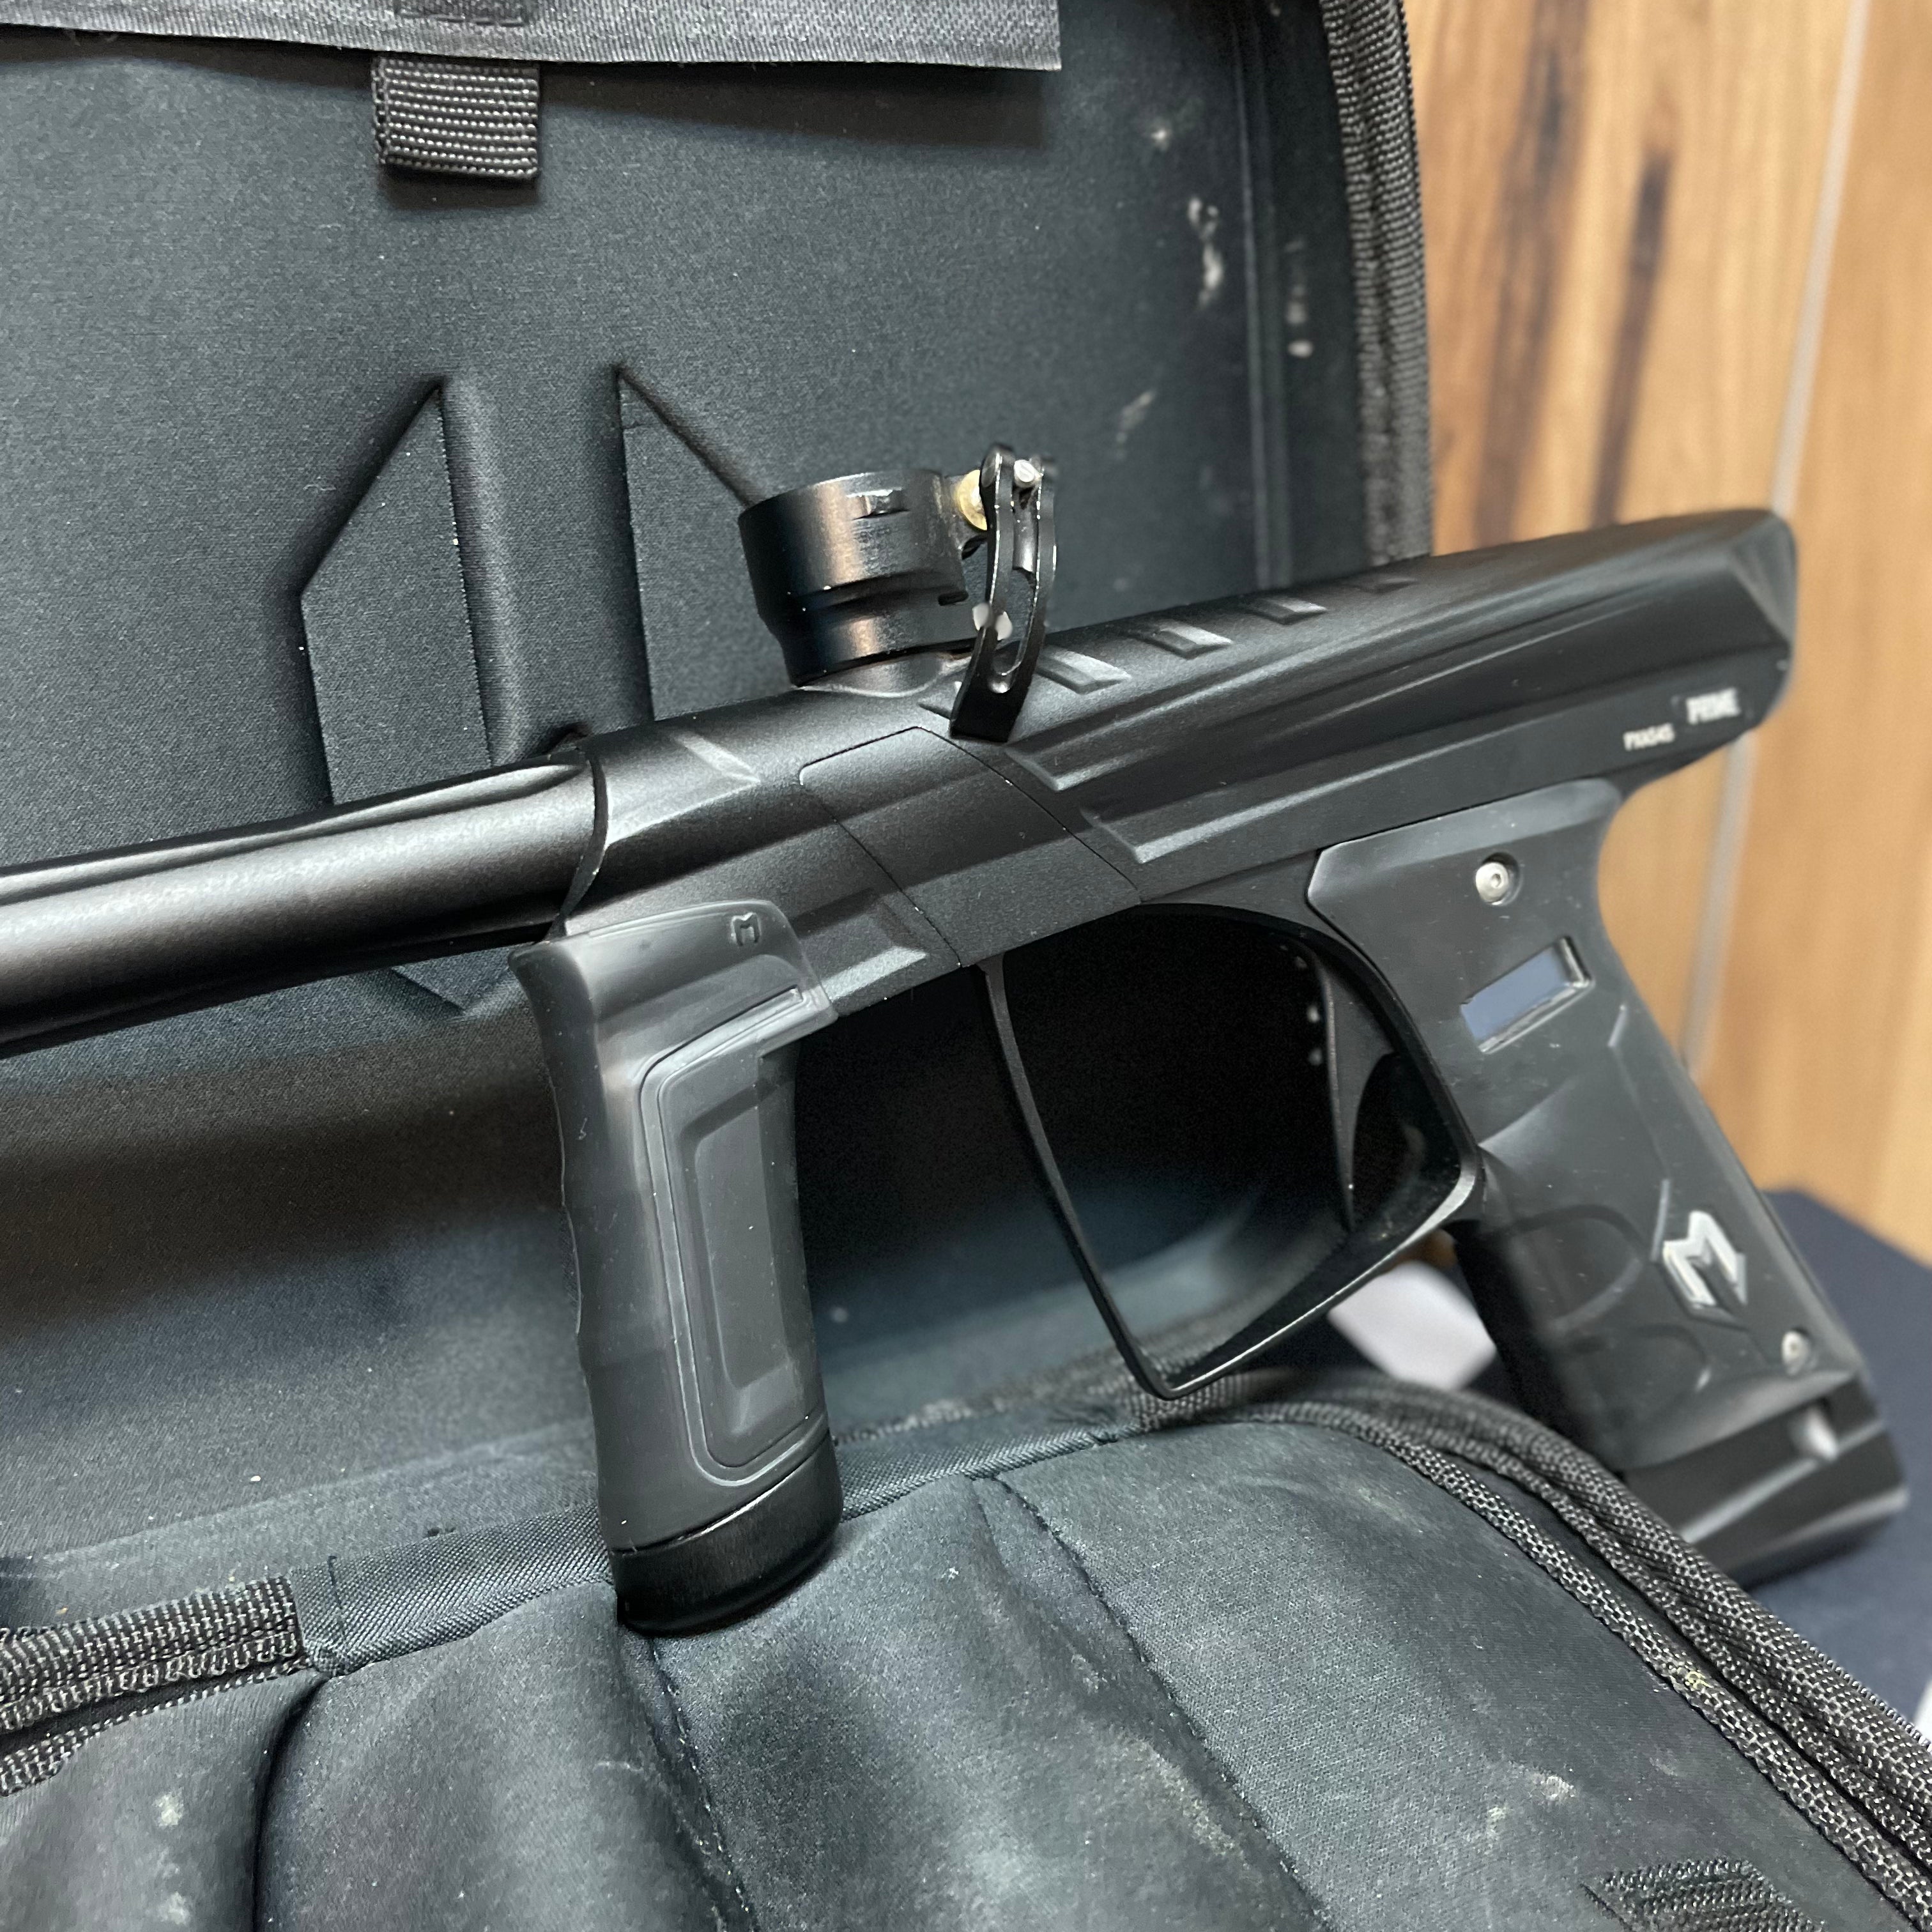 Used MacDev Prime XTS Paintball Gun - Dust Black